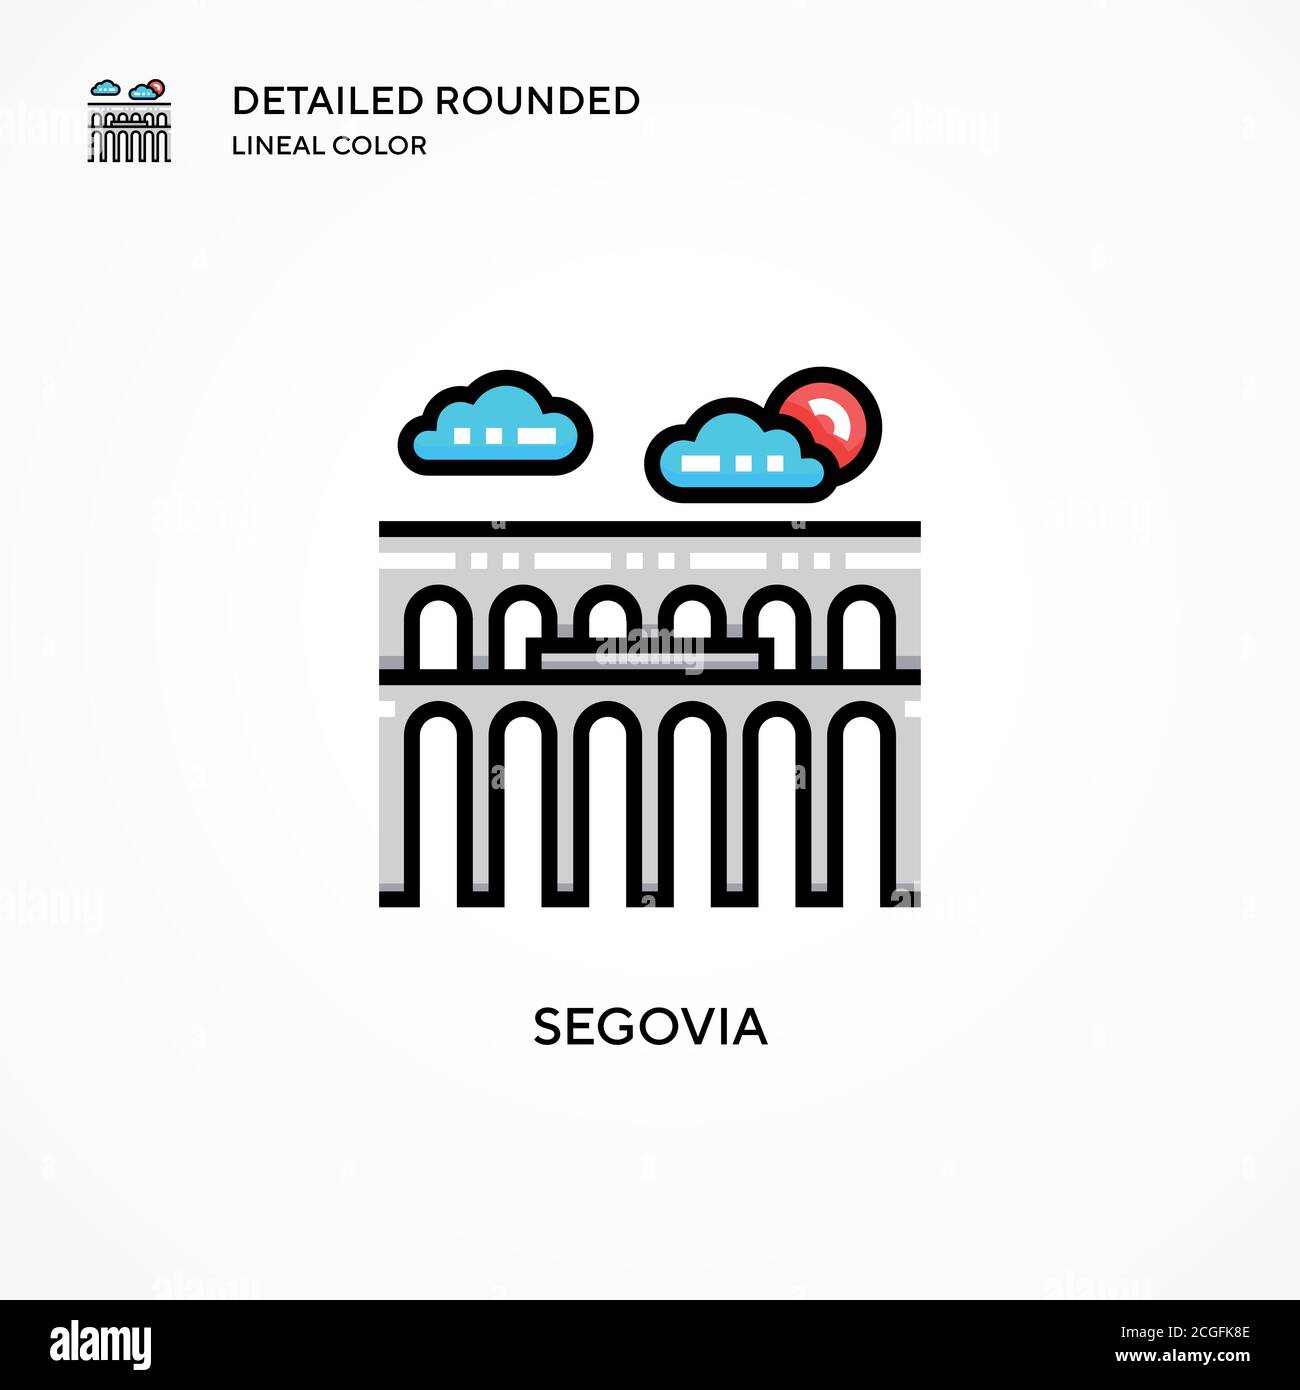 Segovia Vektorsymbol. Moderne Vektorgrafik Konzepte. Einfach zu bearbeiten und anzupassen. Stock Vektor